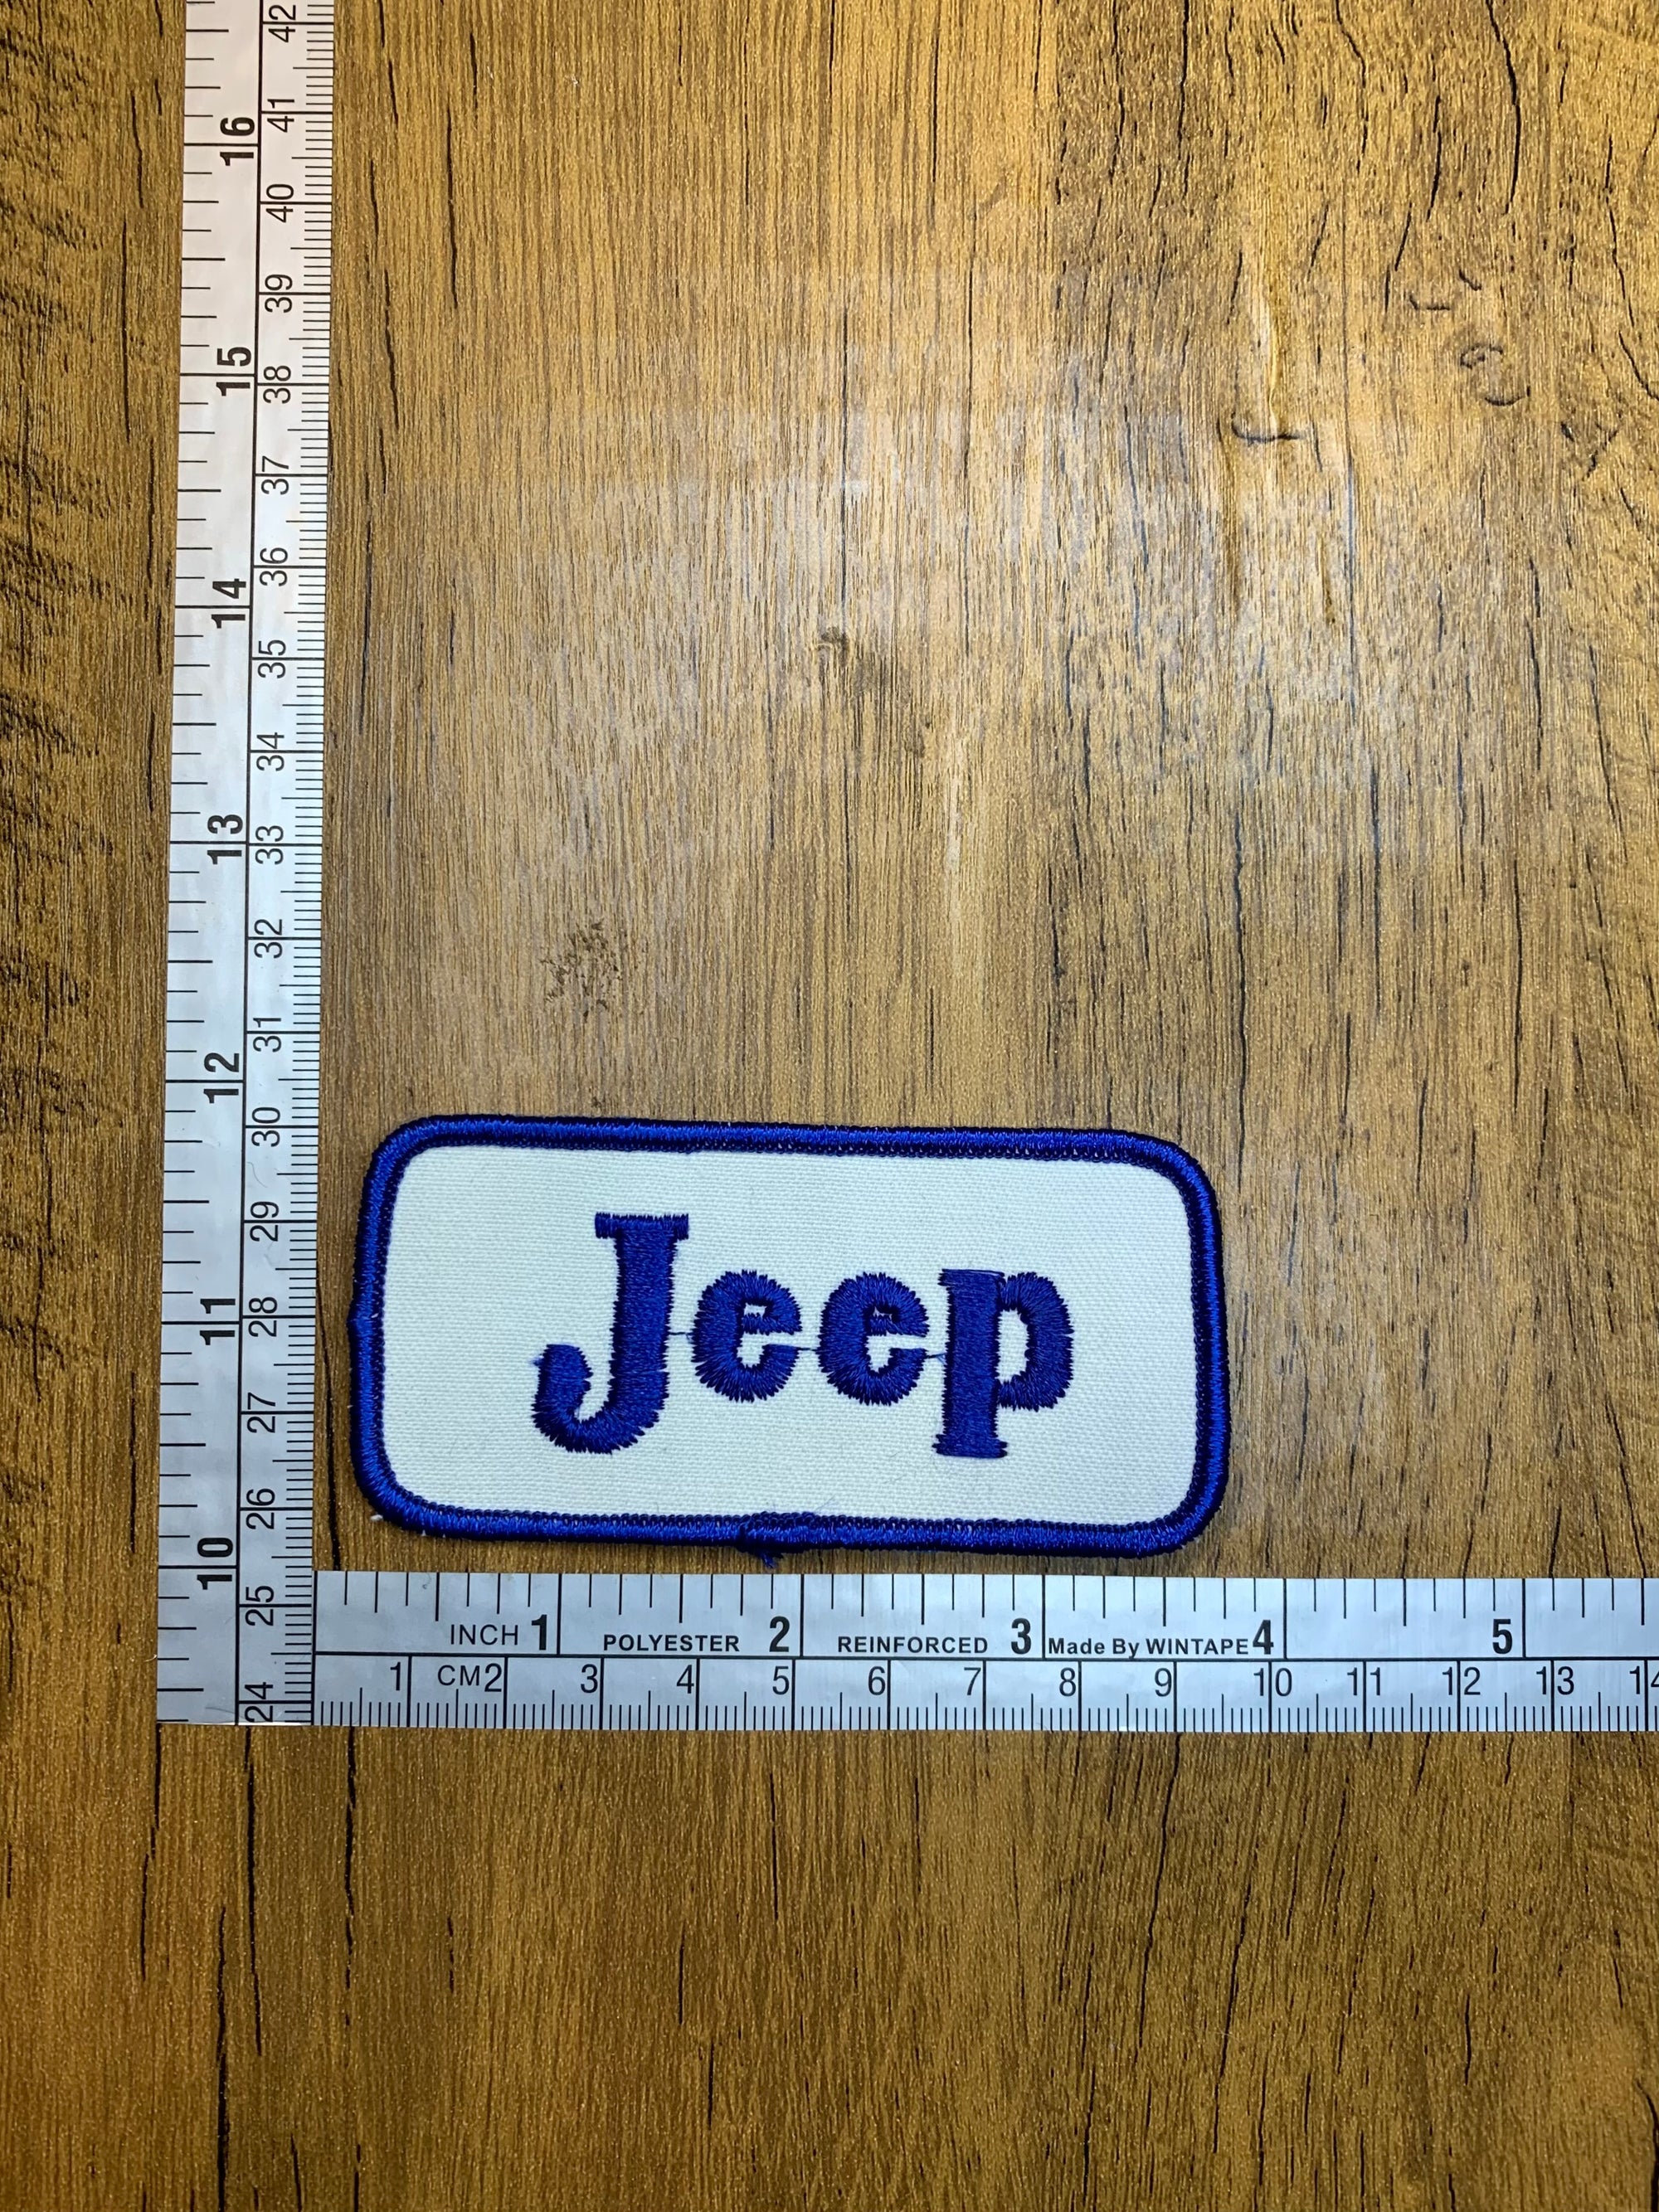 Vintage Jeep